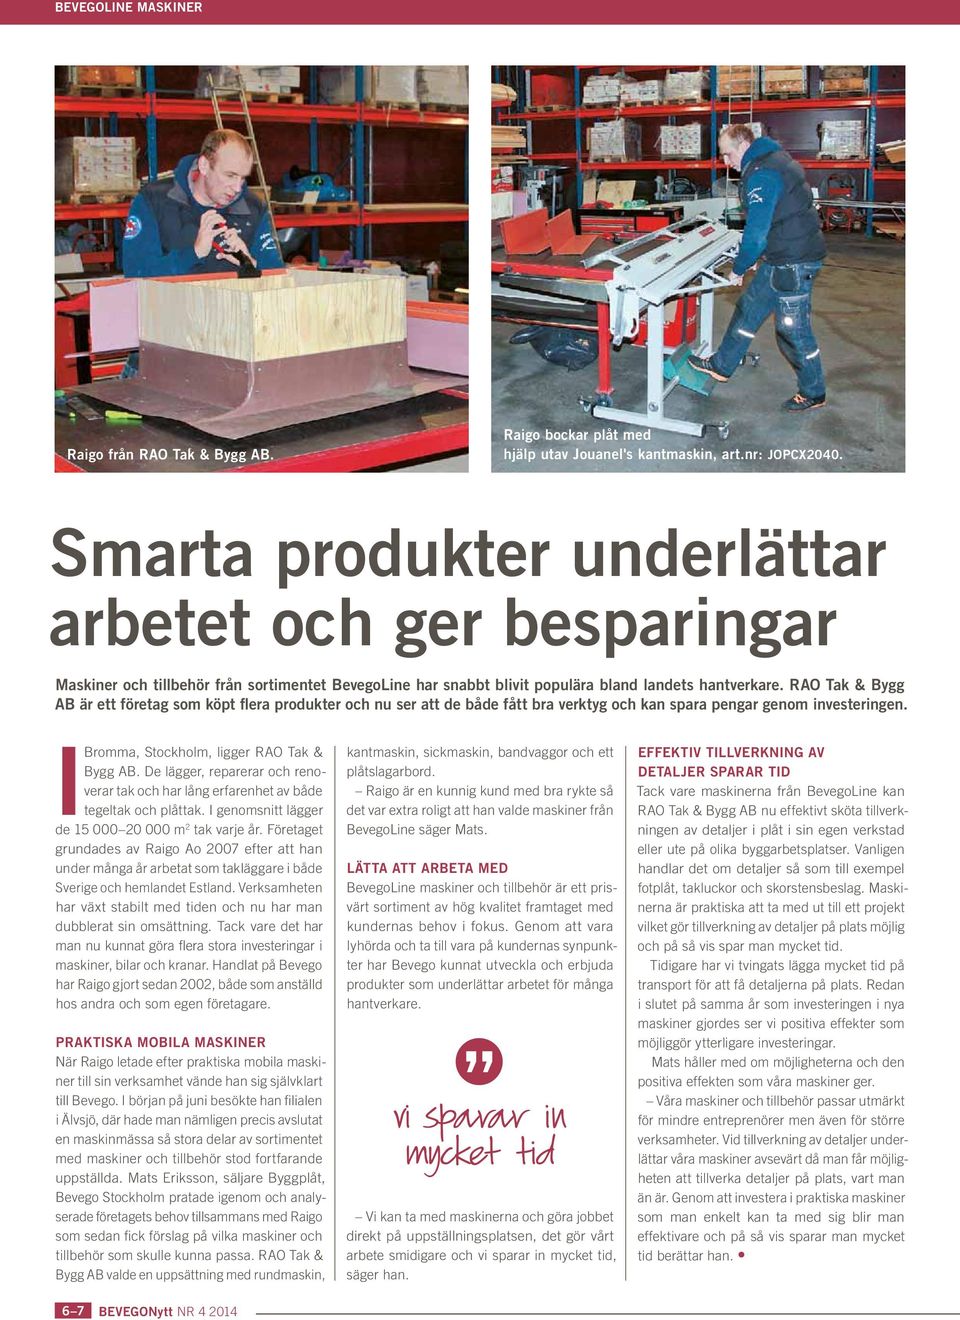 RAO Tak & Bygg AB är ett företag som köpt flera produkter och nu ser att de både fått bra verktyg och kan spara pengar genom investeringen. IBromma, Stockholm, ligger RAO Tak & Bygg AB.